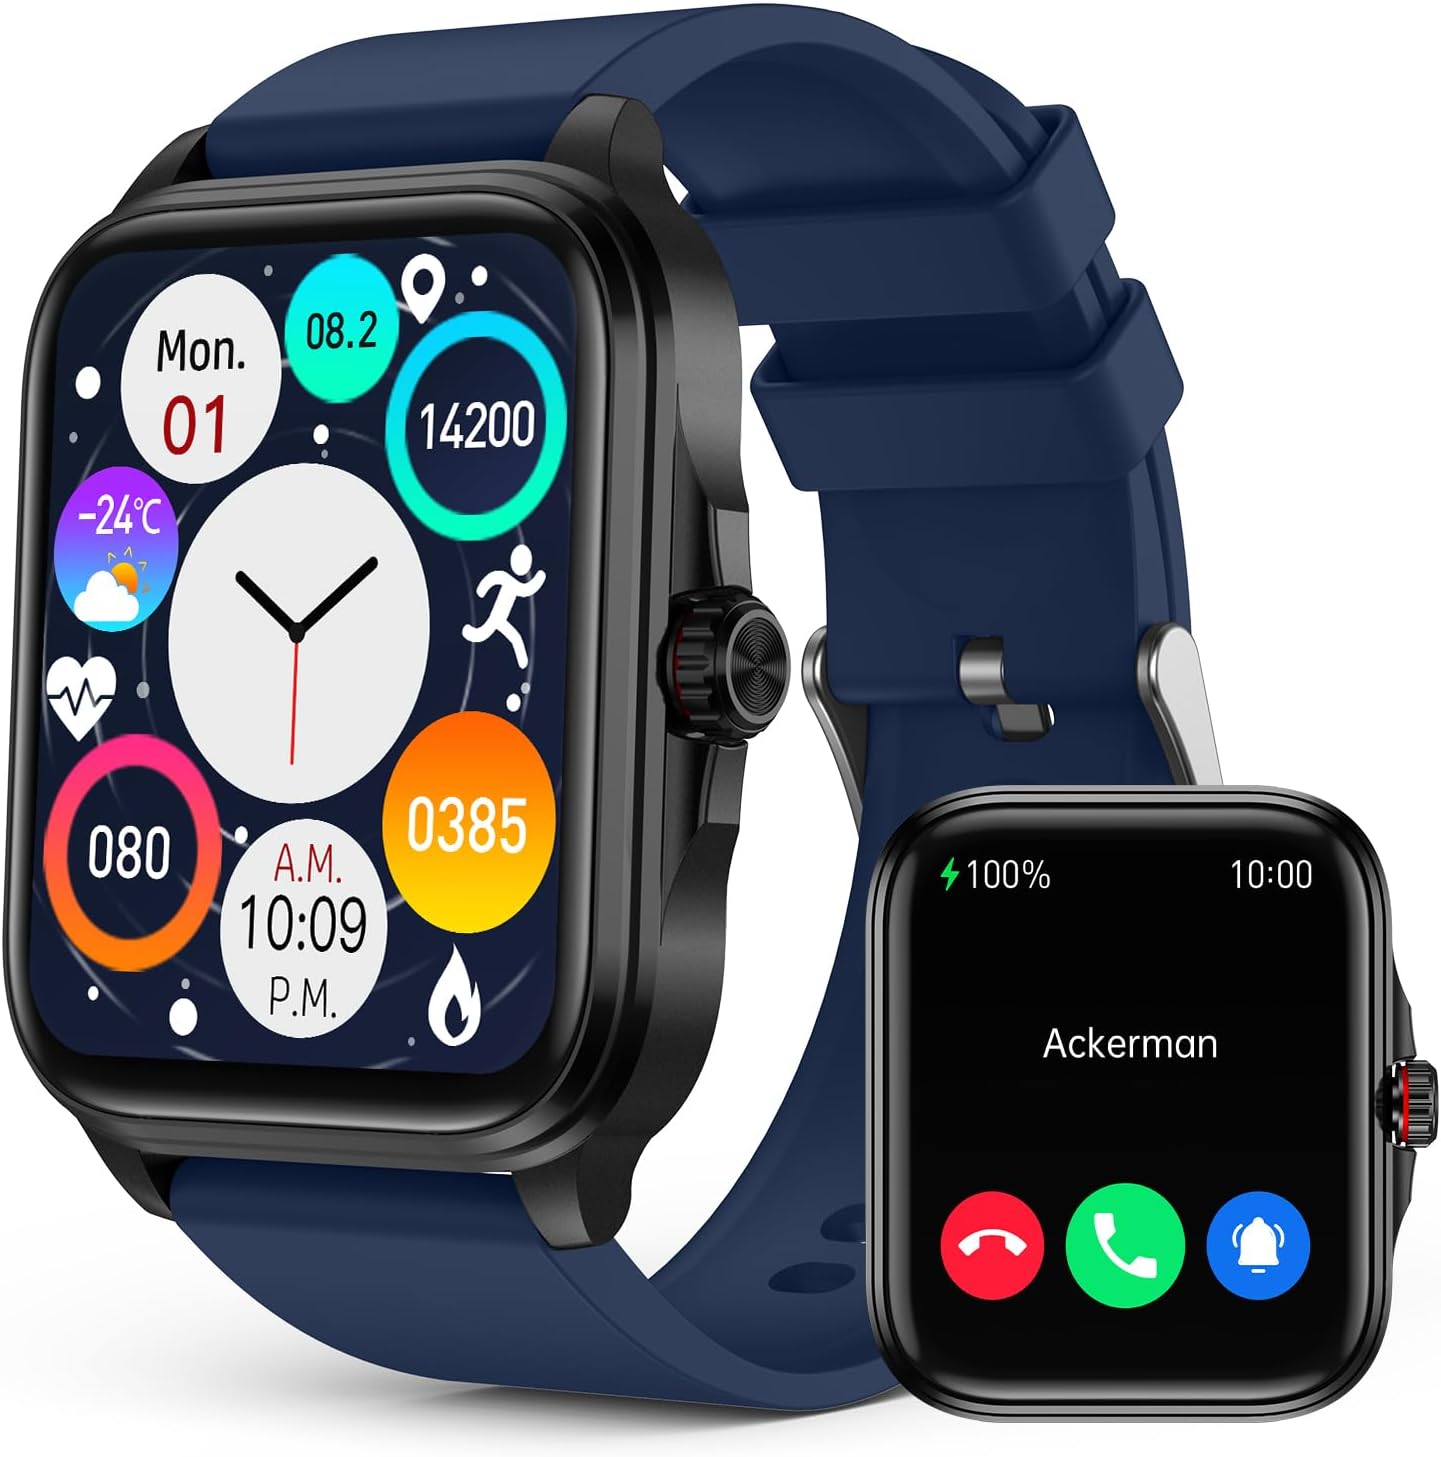 Quelles sont les fonctionnalités de suivi de la santé et du fitness disponibles sur une smartwatch ?插图